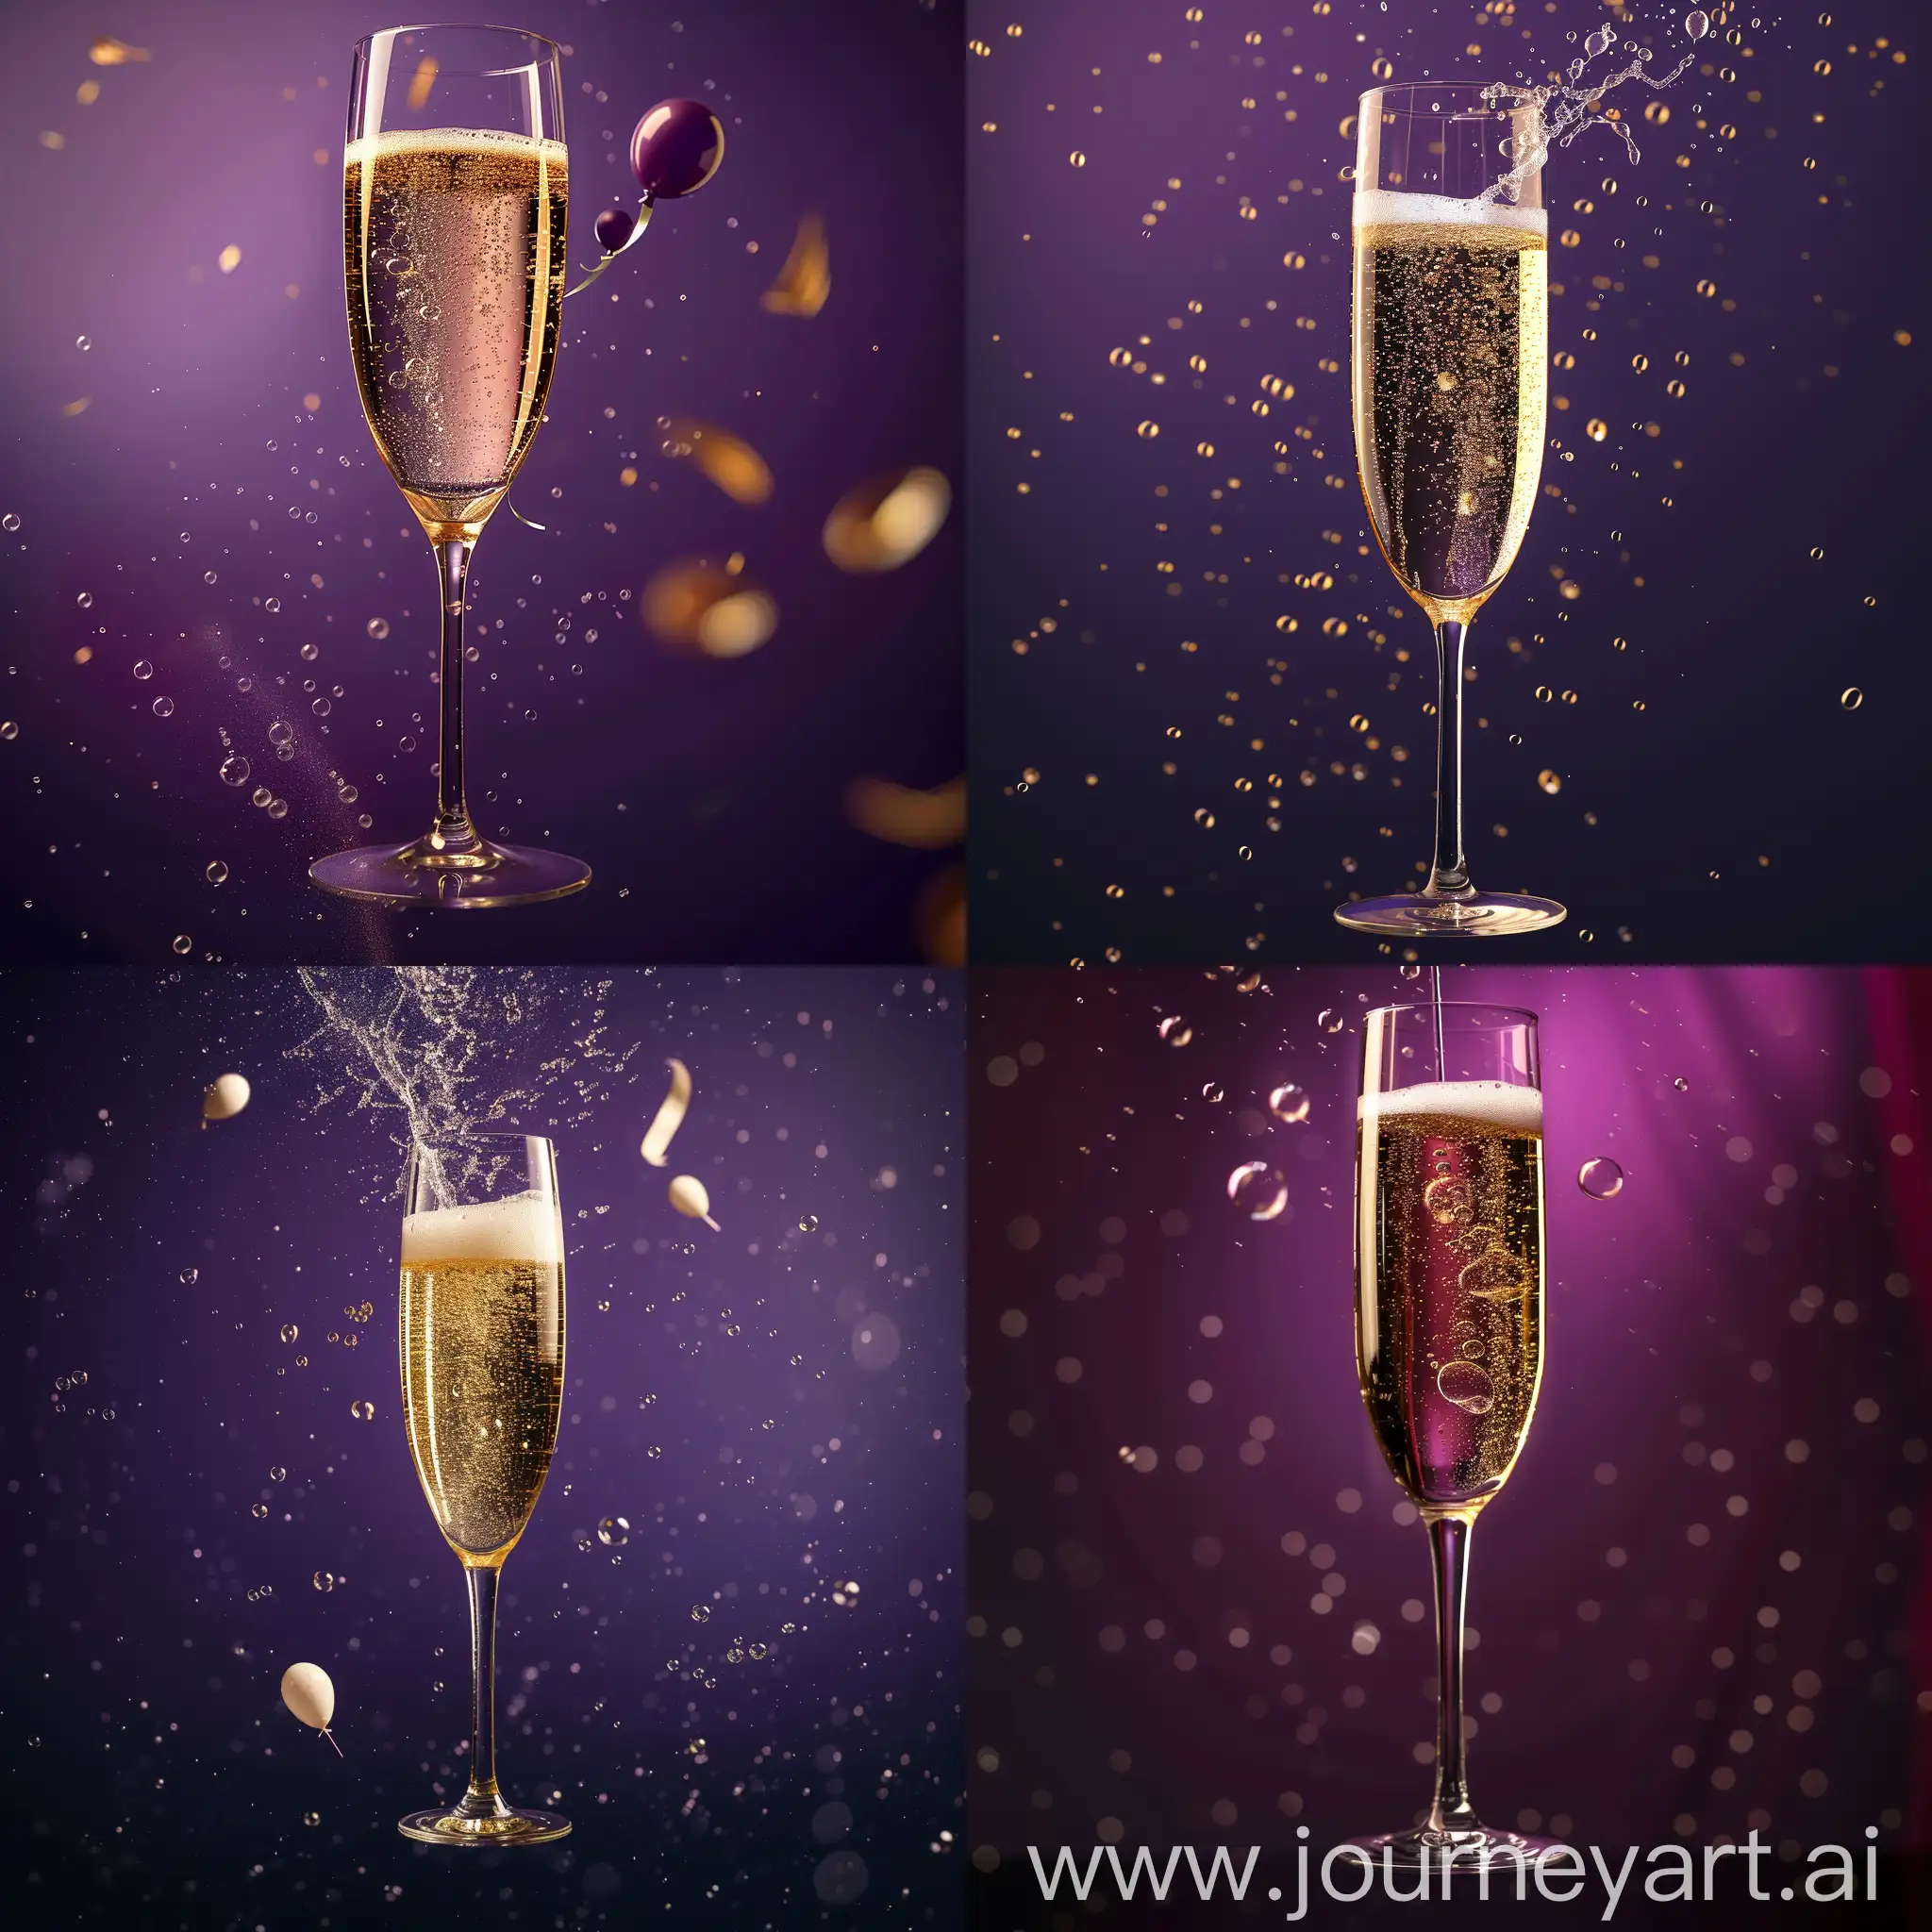 бокал шампанского, пузырьки газа, абстрактный фиолетовый фон, из бокала вылетают маленькие воздушные шары, реалистично, резко везде, гиперреализм